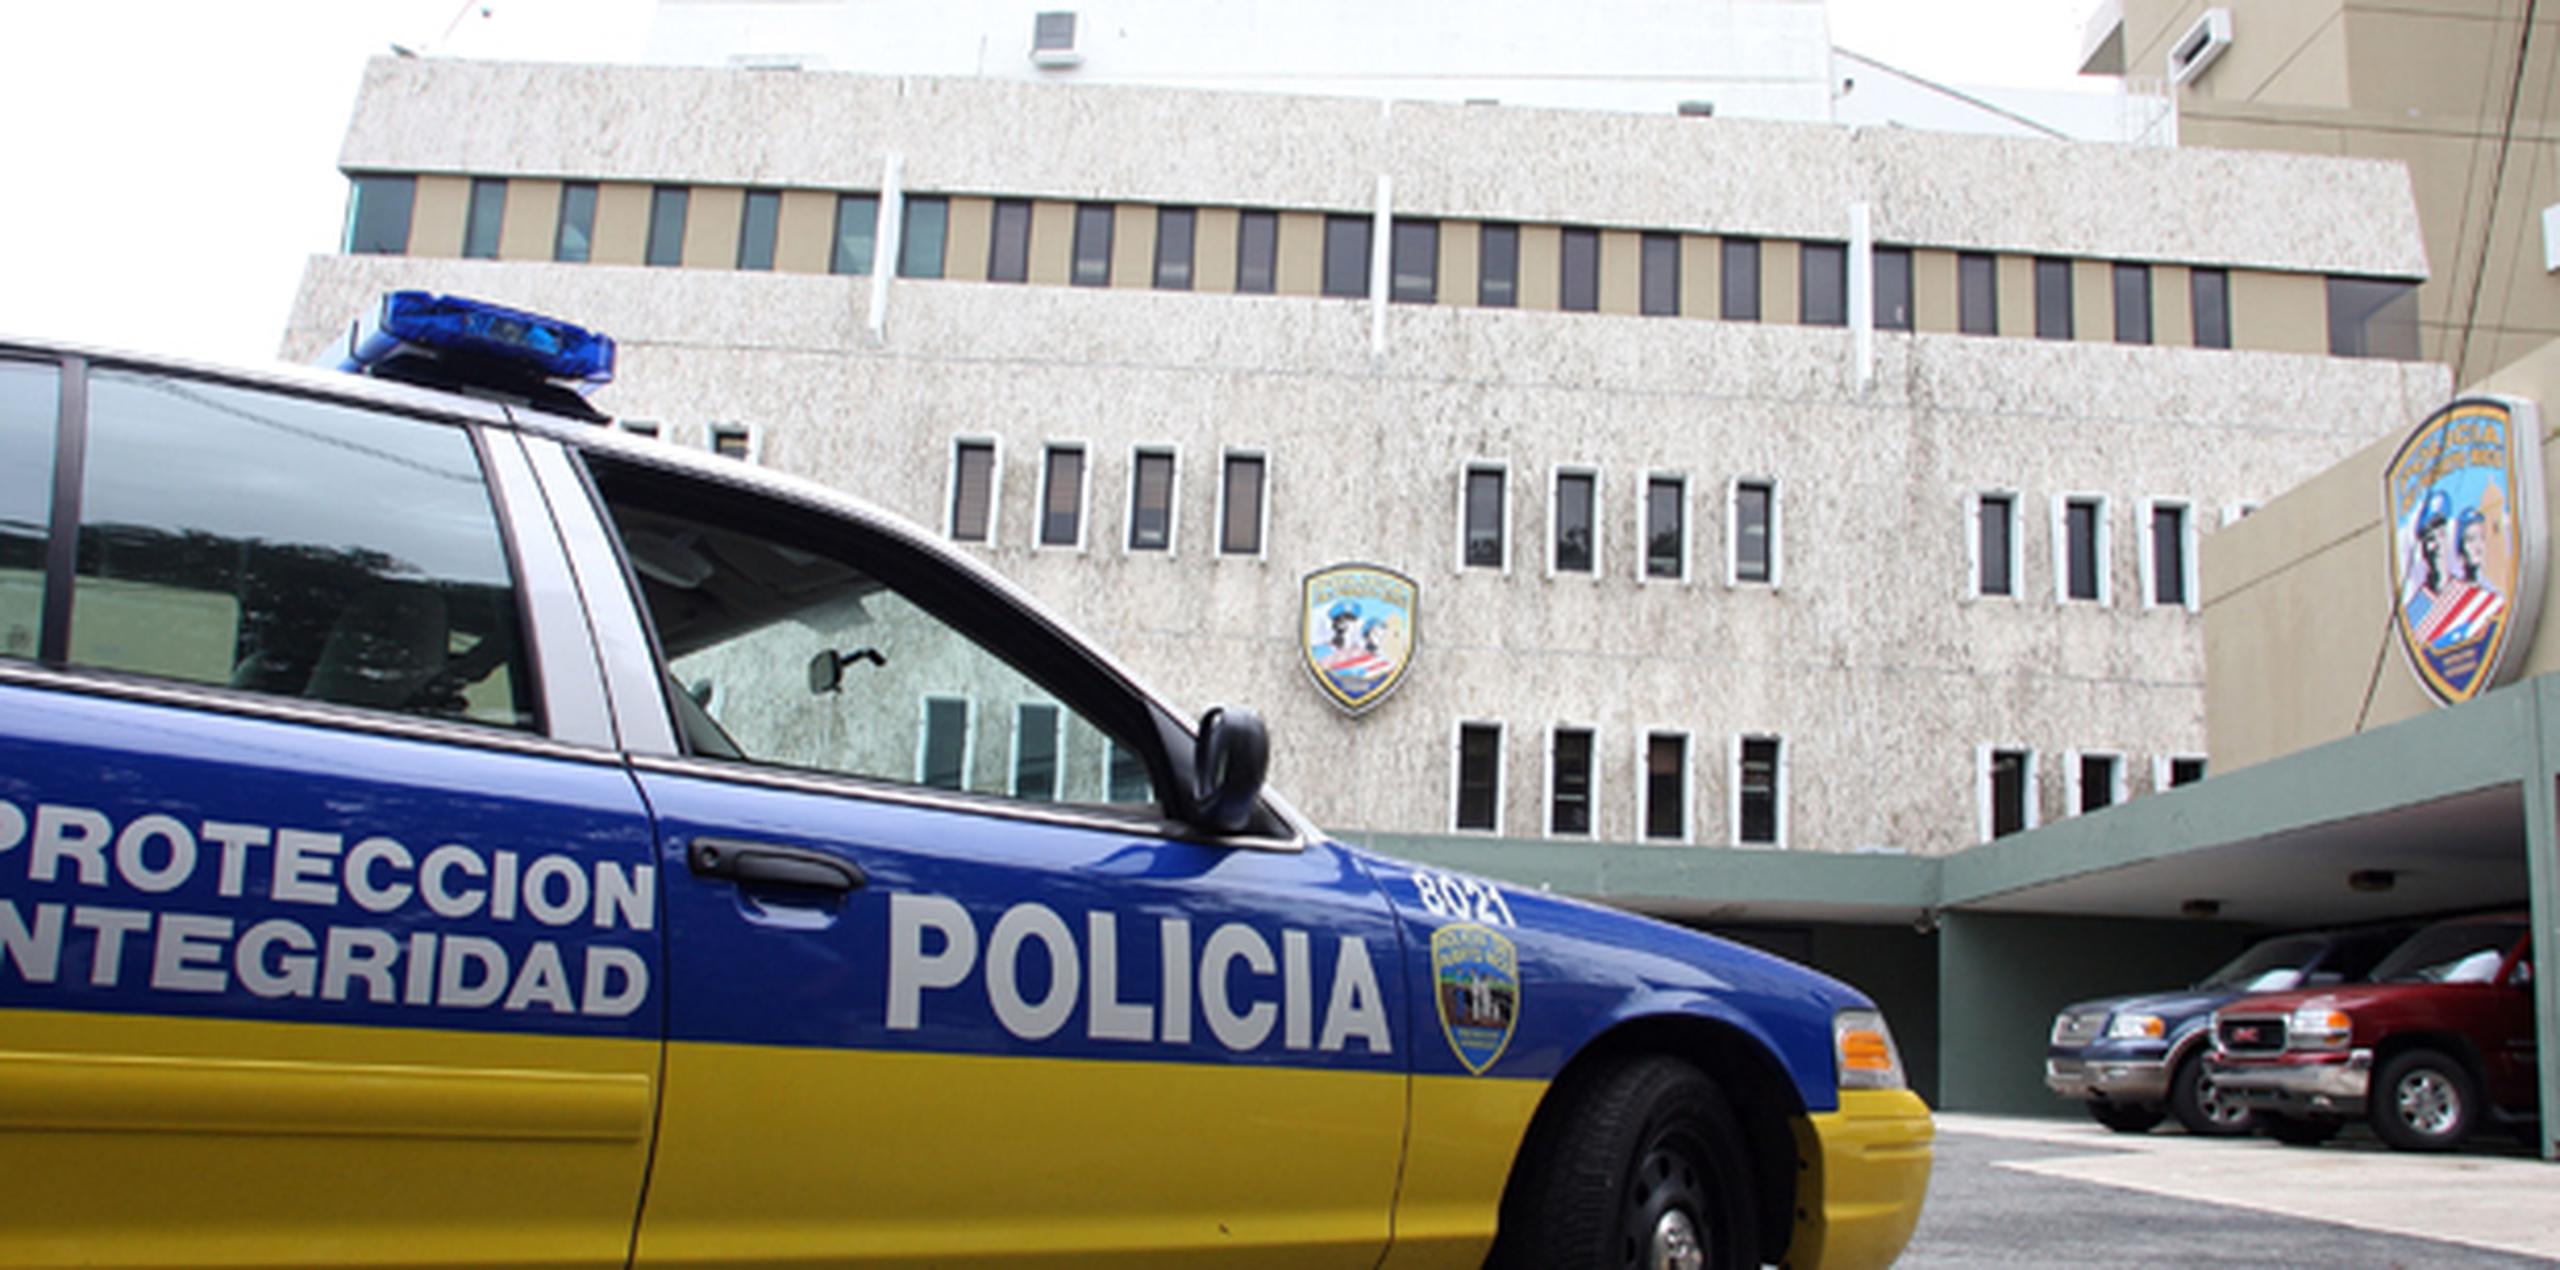 El caso fue investigado por el agente Alexander Irizarry, adscrito a la División de Delitos contra la Propiedad del Área de Arecibo, en consulta con el fiscal Israel Chico Moya. (Archivo)